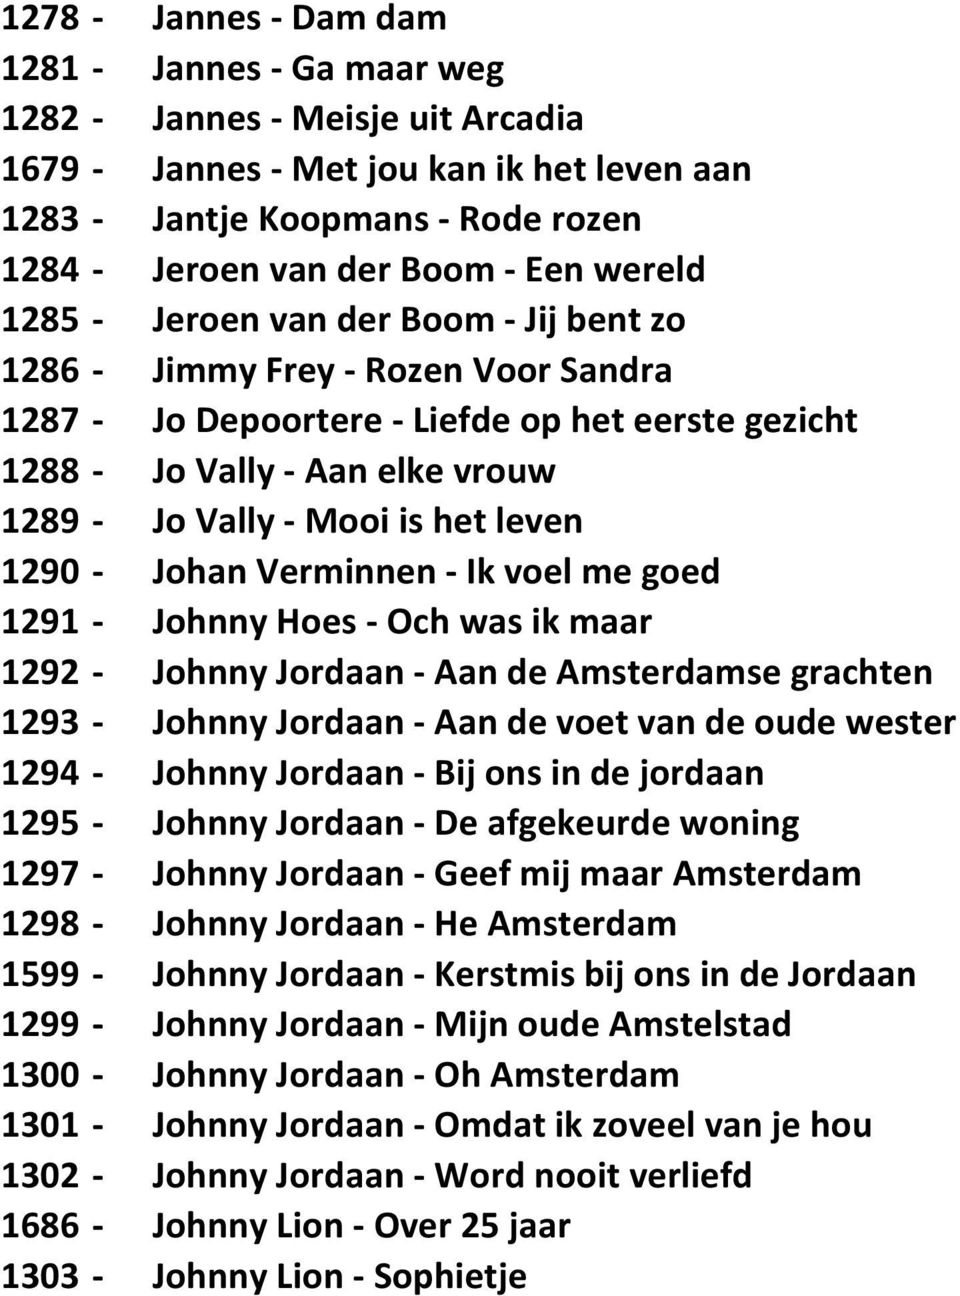 is het leven 1290 - Johan Verminnen - Ik voel me goed 1291 - Johnny Hoes - Och was ik maar 1292 - Johnny Jordaan - Aan de Amsterdamse grachten 1293 - Johnny Jordaan - Aan de voet van de oude wester